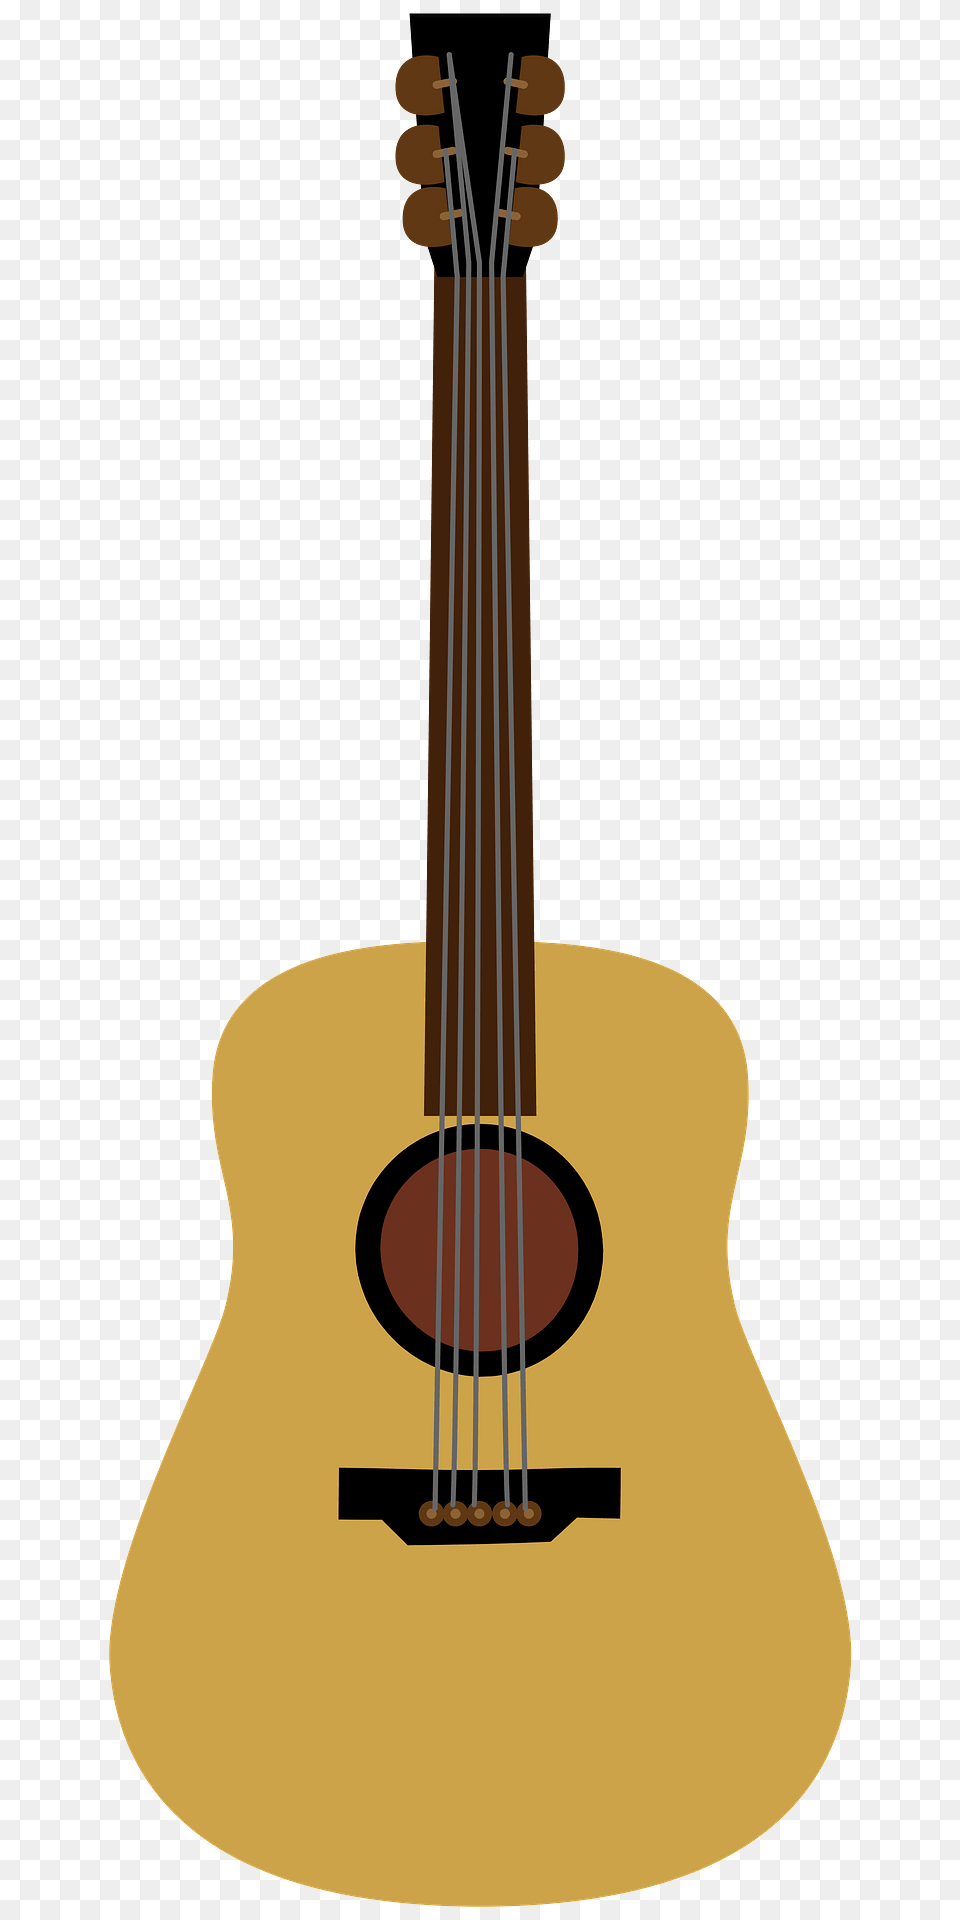 Guitar Clipart, Bass Guitar, Musical Instrument Png